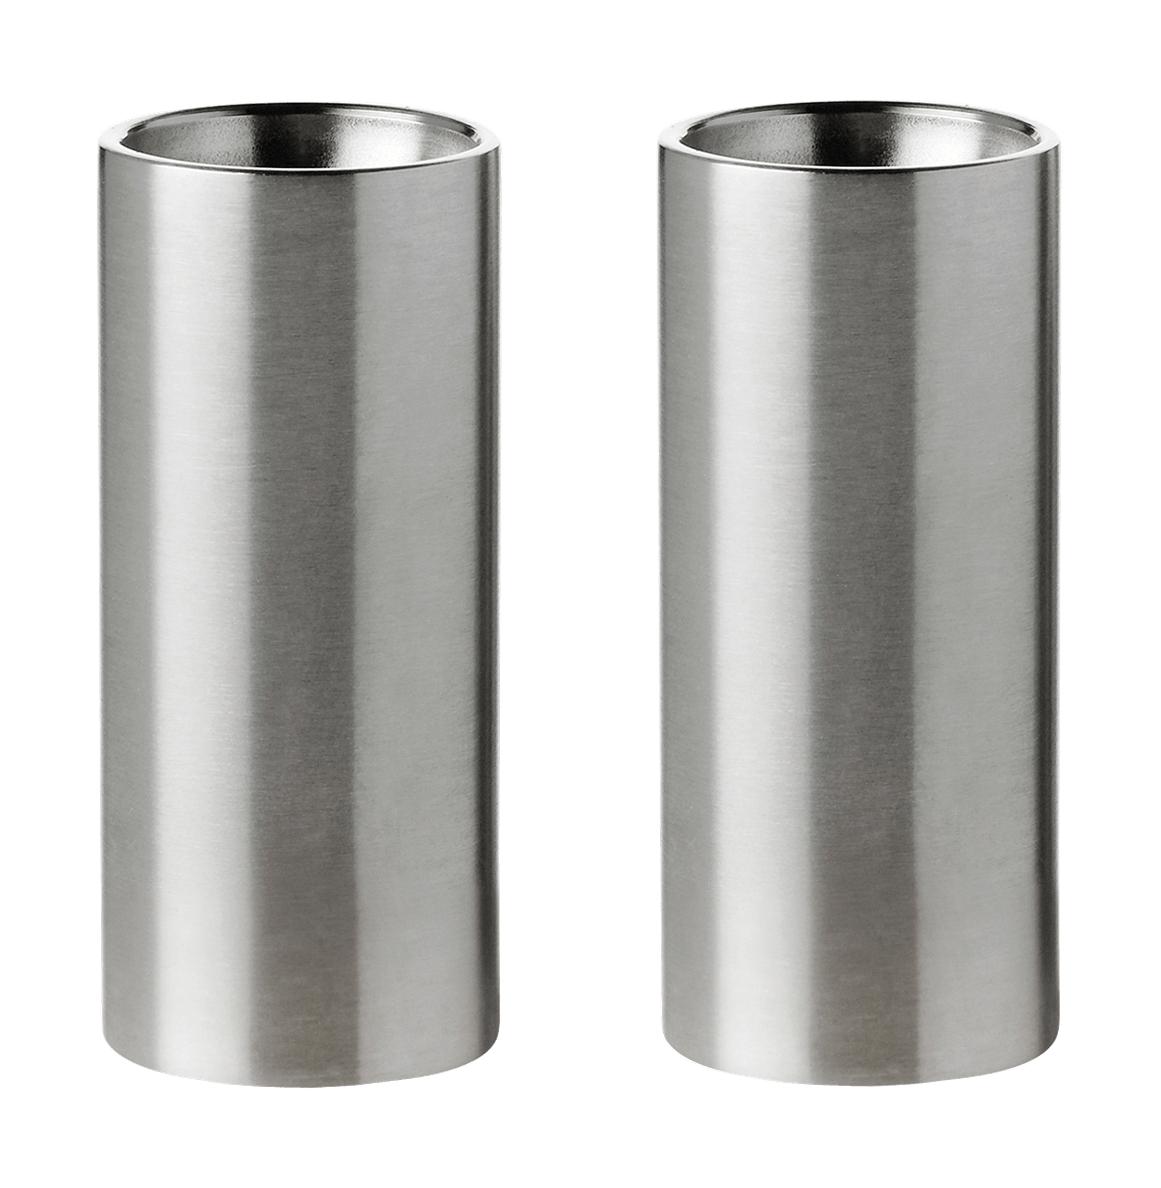 Stelton Arne Jacobsen Salt/Pepper Shaker